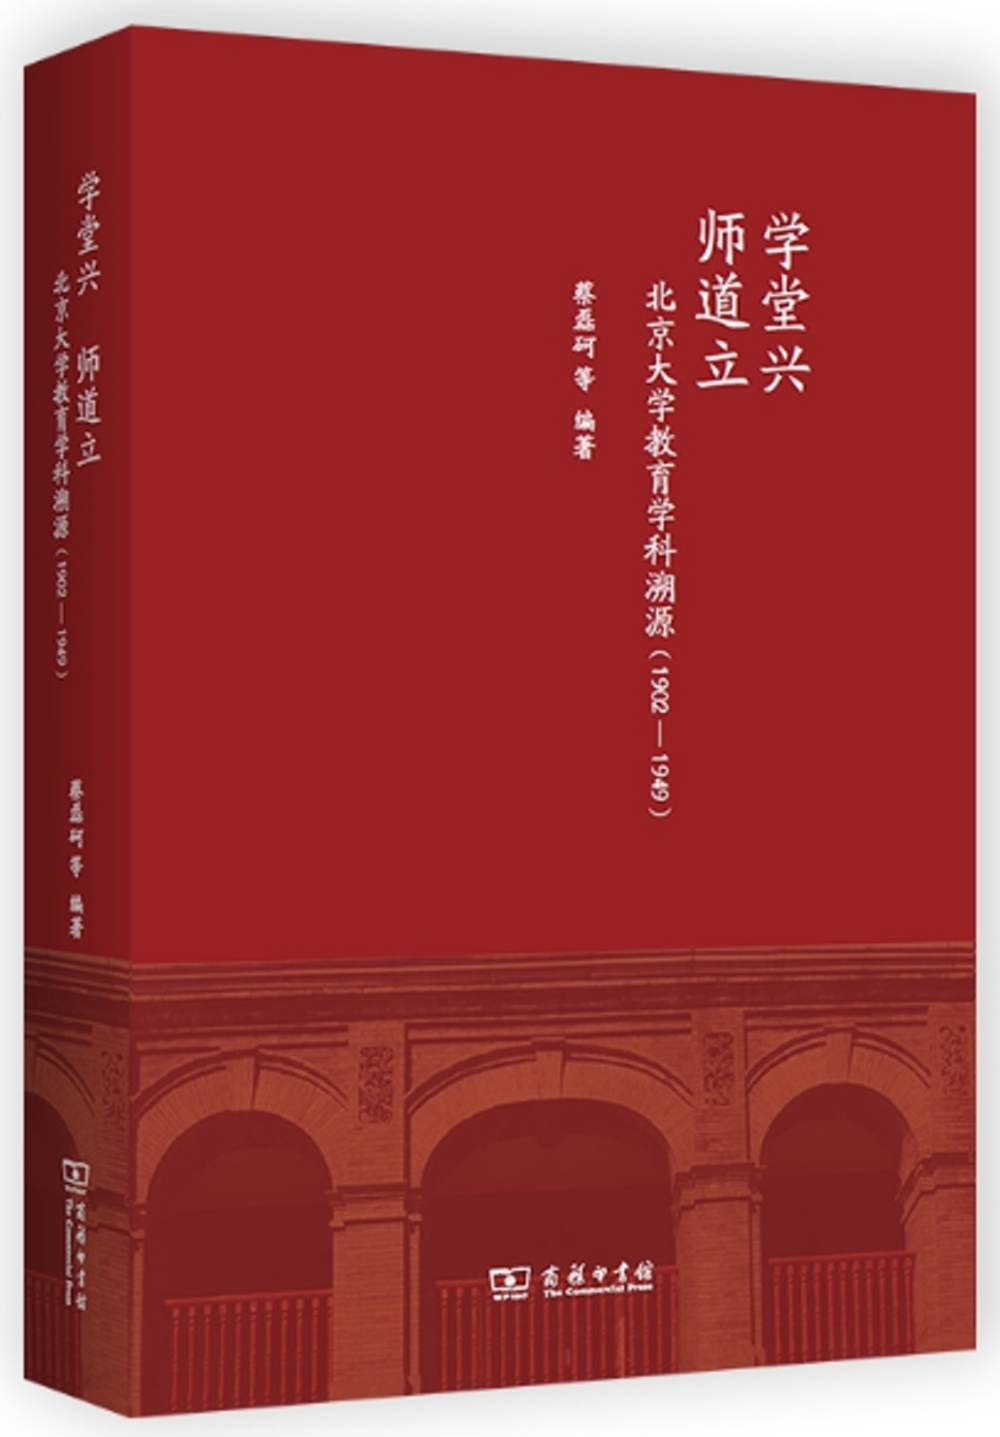 學堂興 師道立：北京大學教育學科溯源（1902-1949）